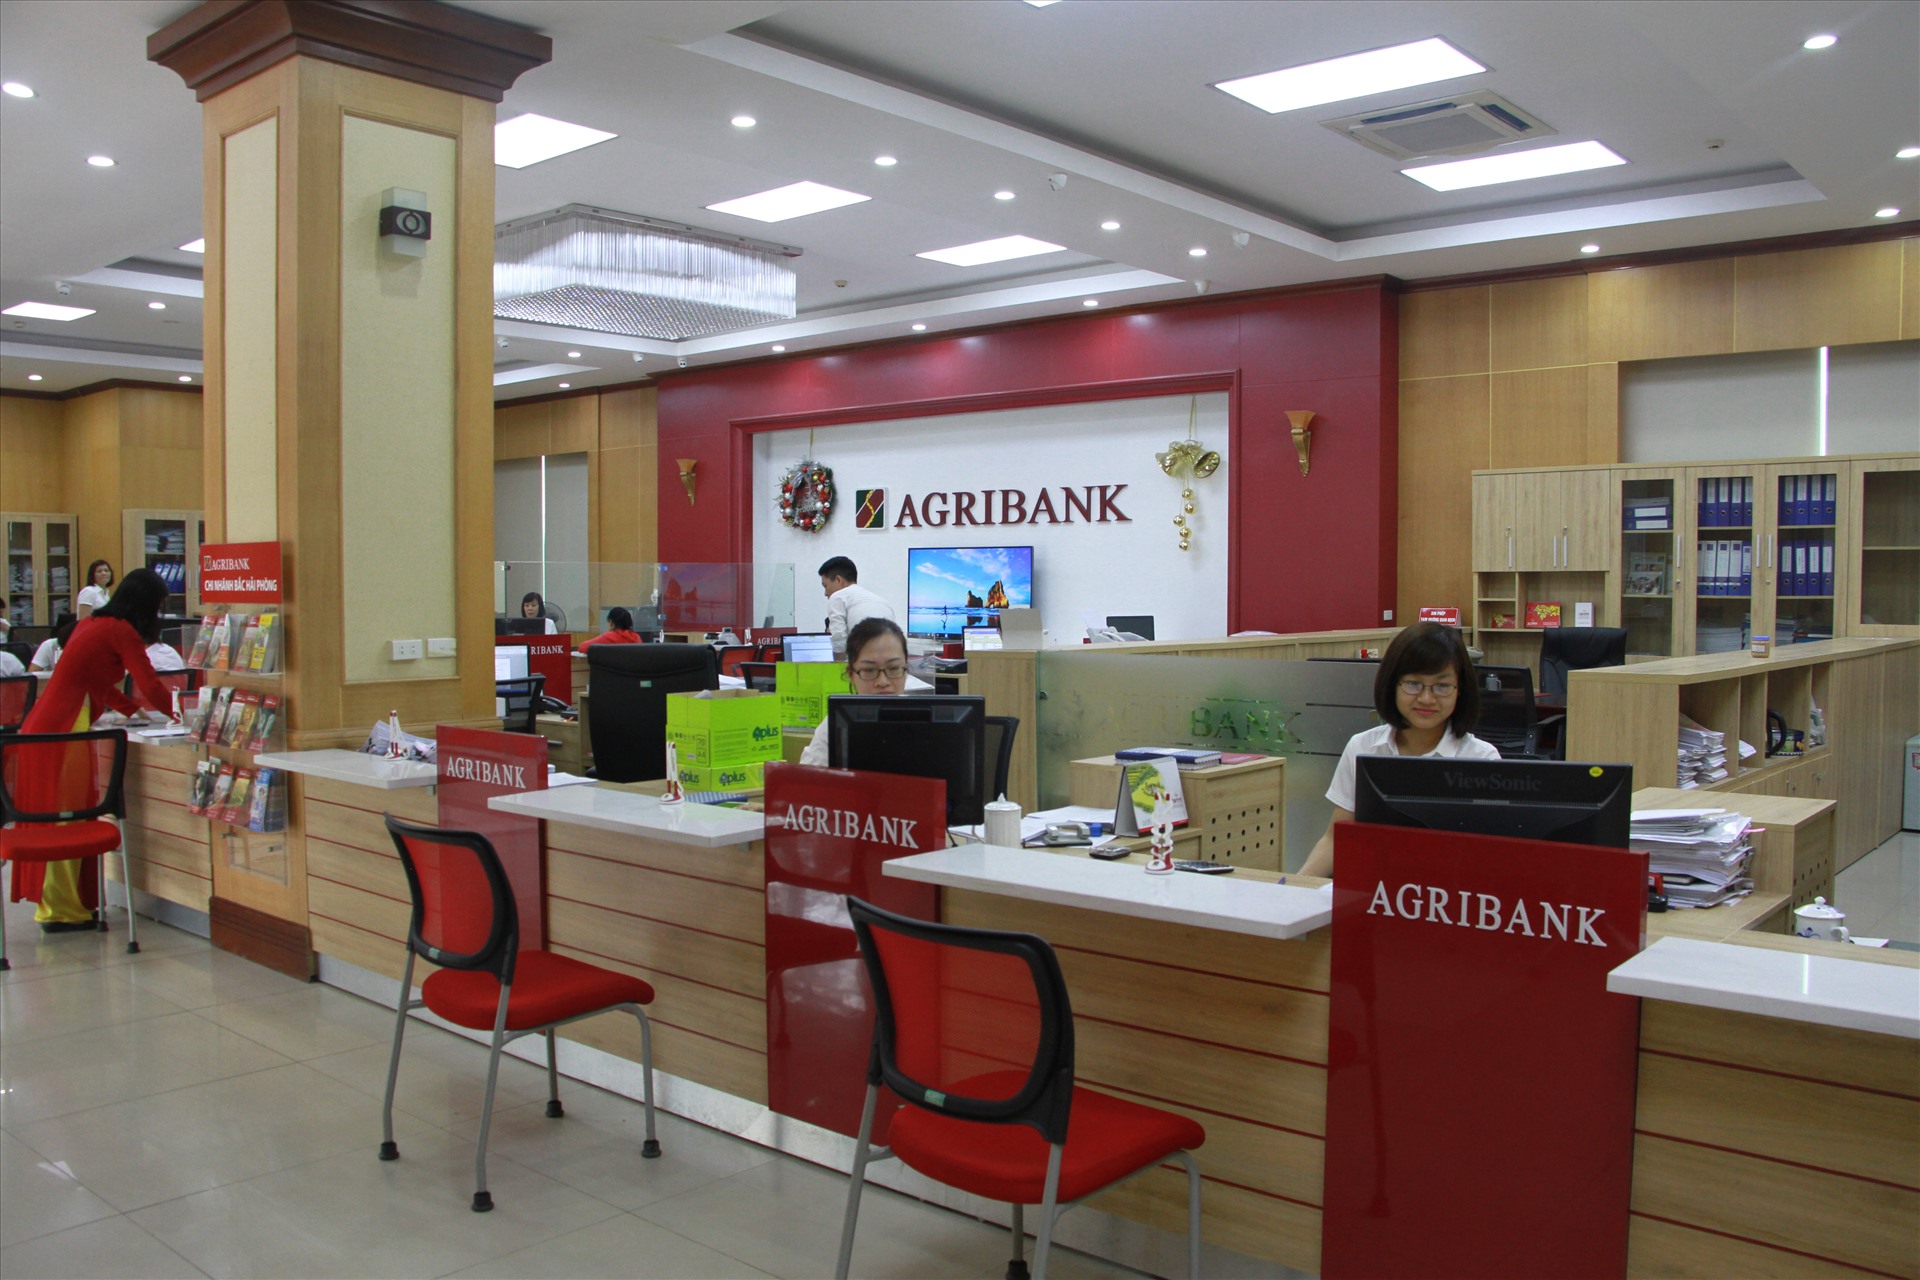 Mạng lưới rộng khắp là điểm mạnh của Agribank trong việc cung ứng sản phẩm dịch vụ hiện đại tới khách hàng